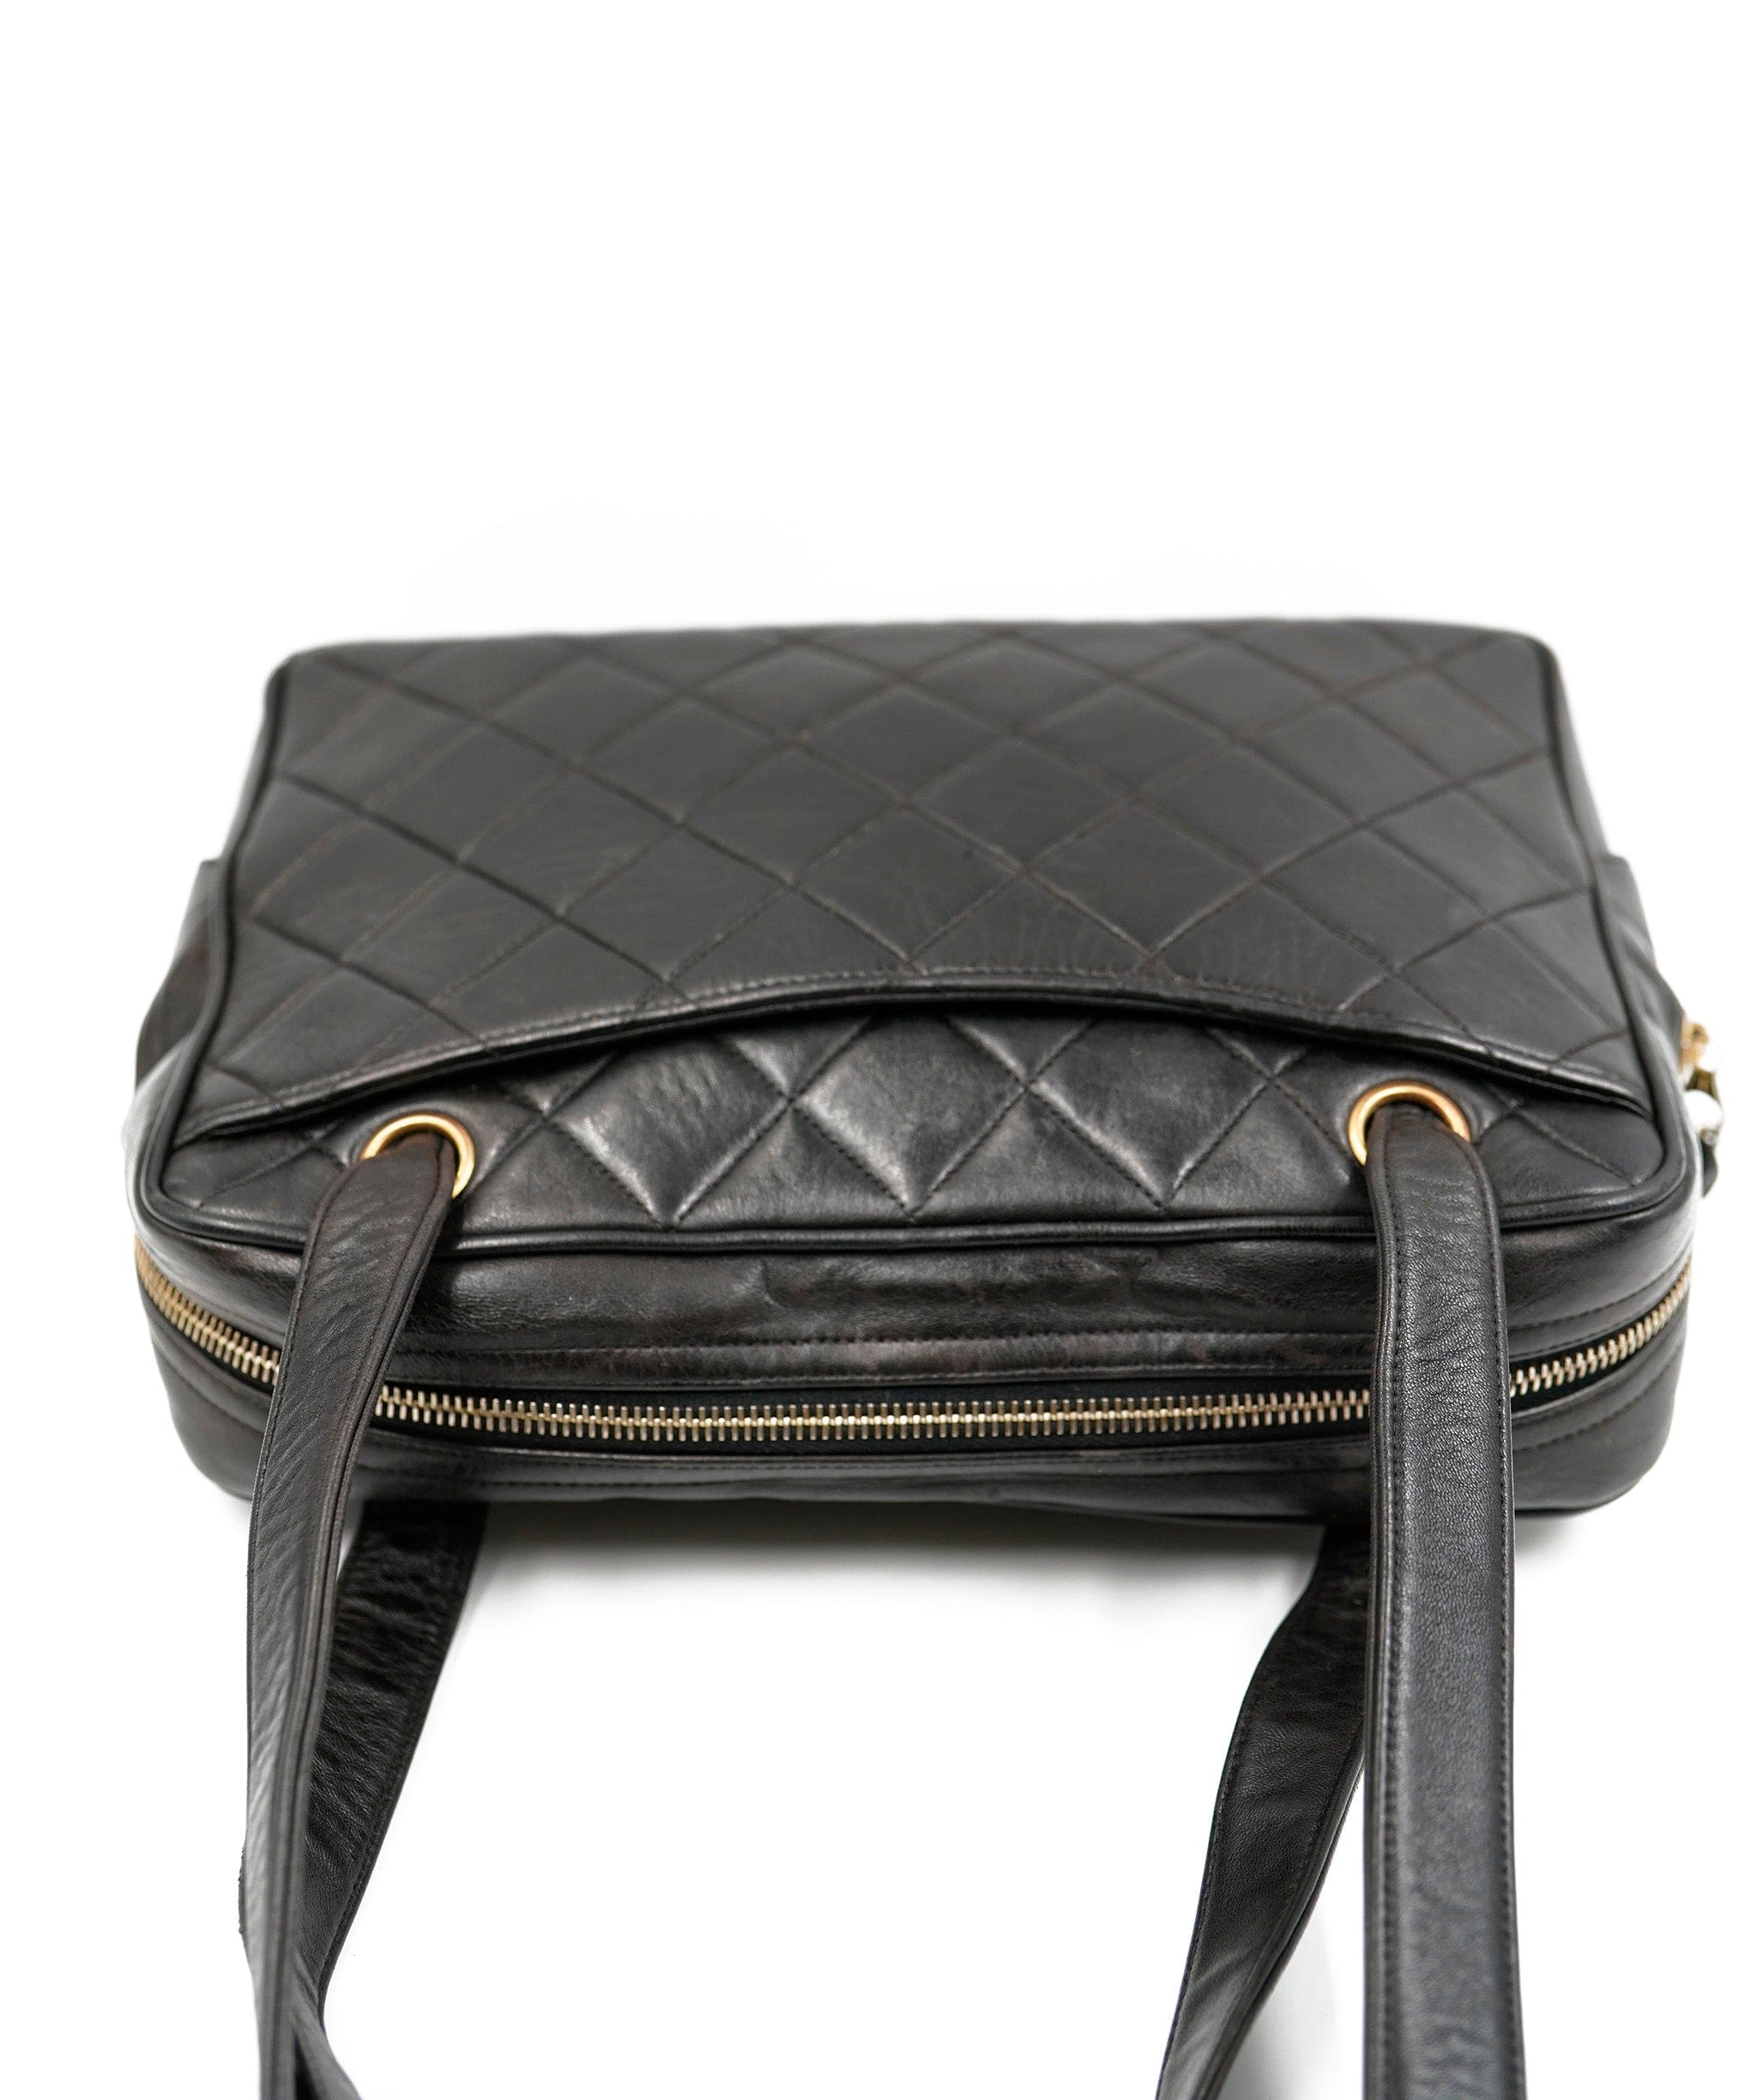 Chanel Vintage Chanel black shoulder bag ALC0179